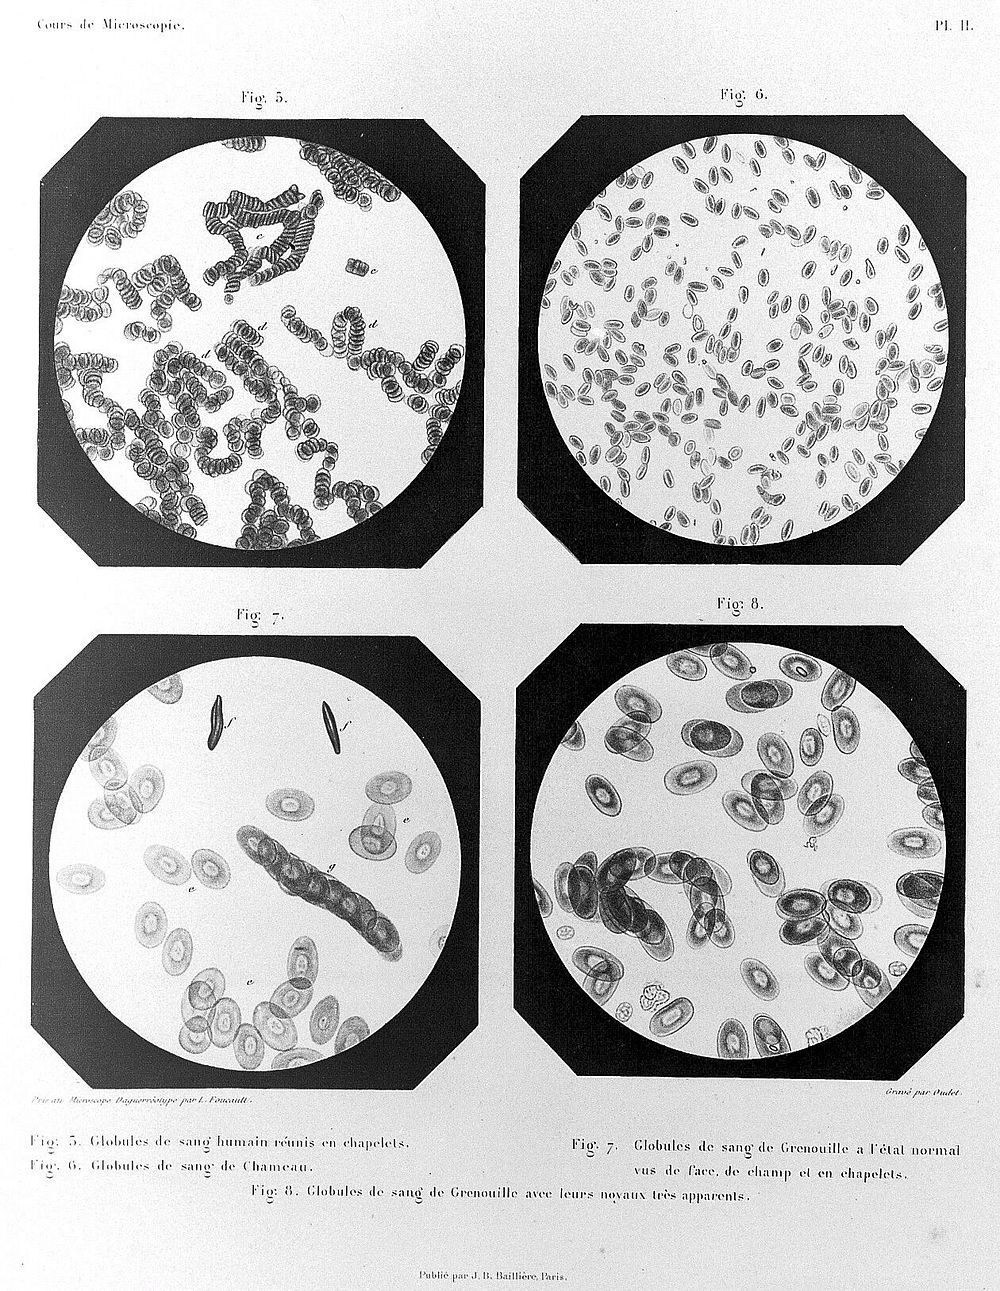 Cours de microscopie complémentaire des études médicales ... / par Al. Donné.